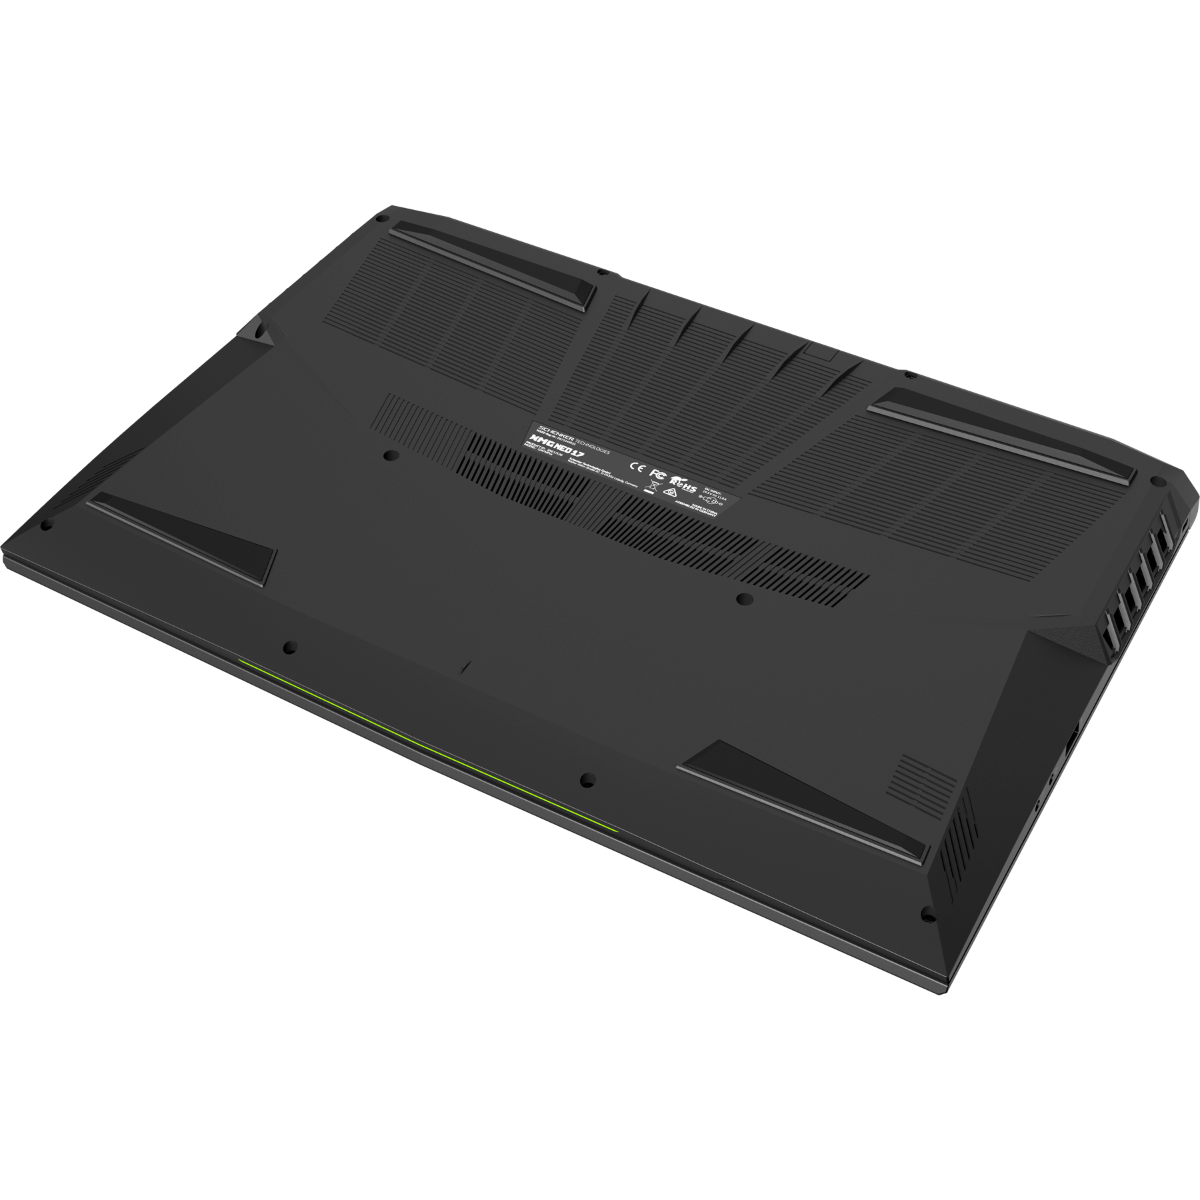 Schenker XMG Pro 17 (Early 2021, RTX 3070)